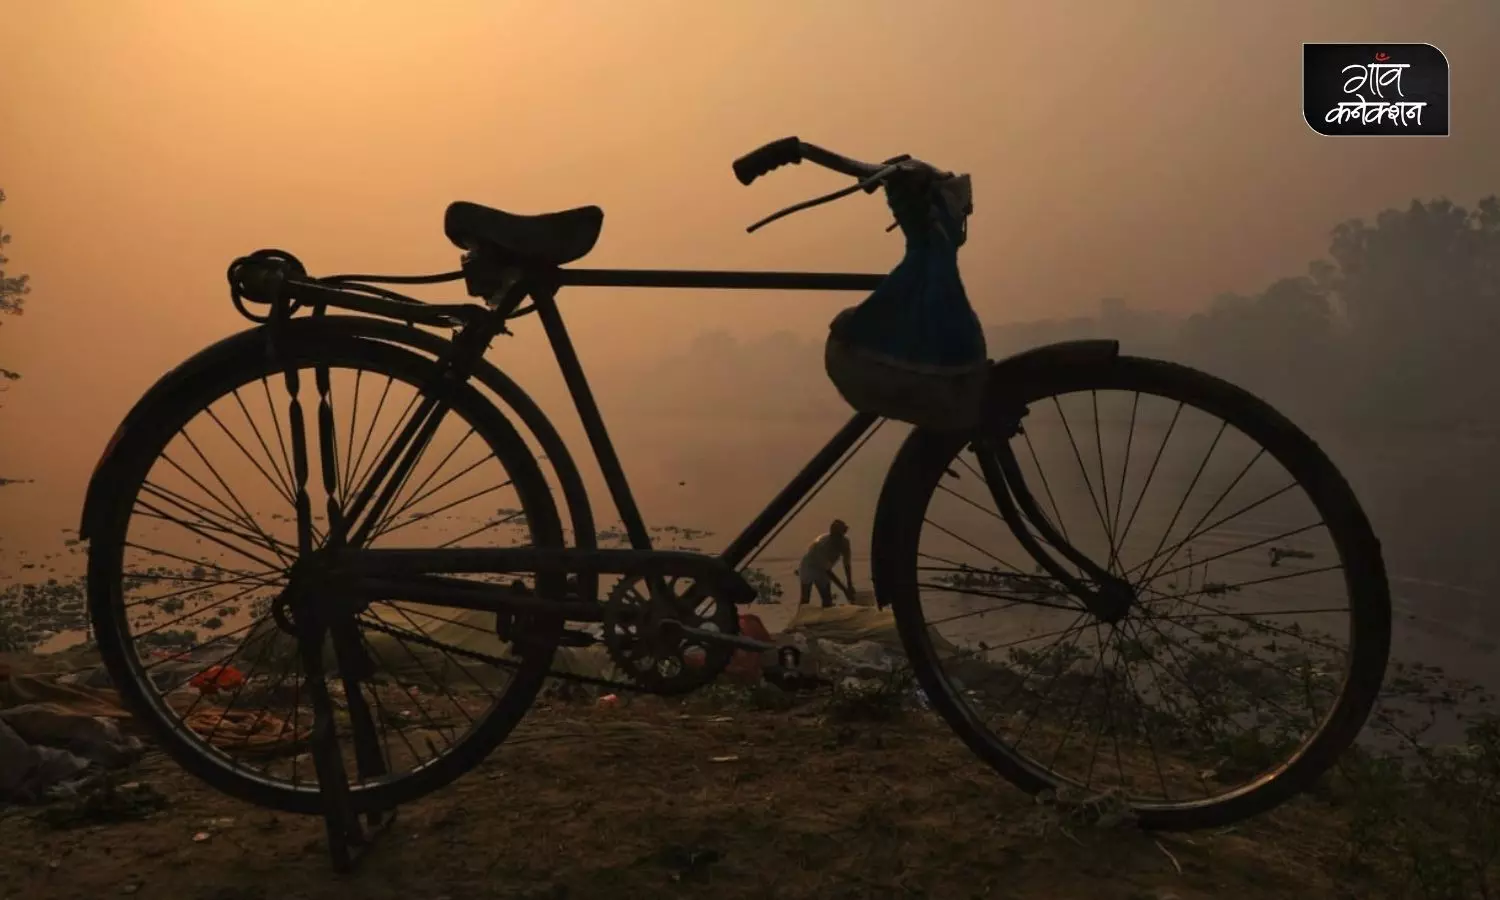 साइकिल कथा: कभी जिसके सहारे मीलों की दूरियां तय करते थे, अब उससे ही दूरियां बना ली